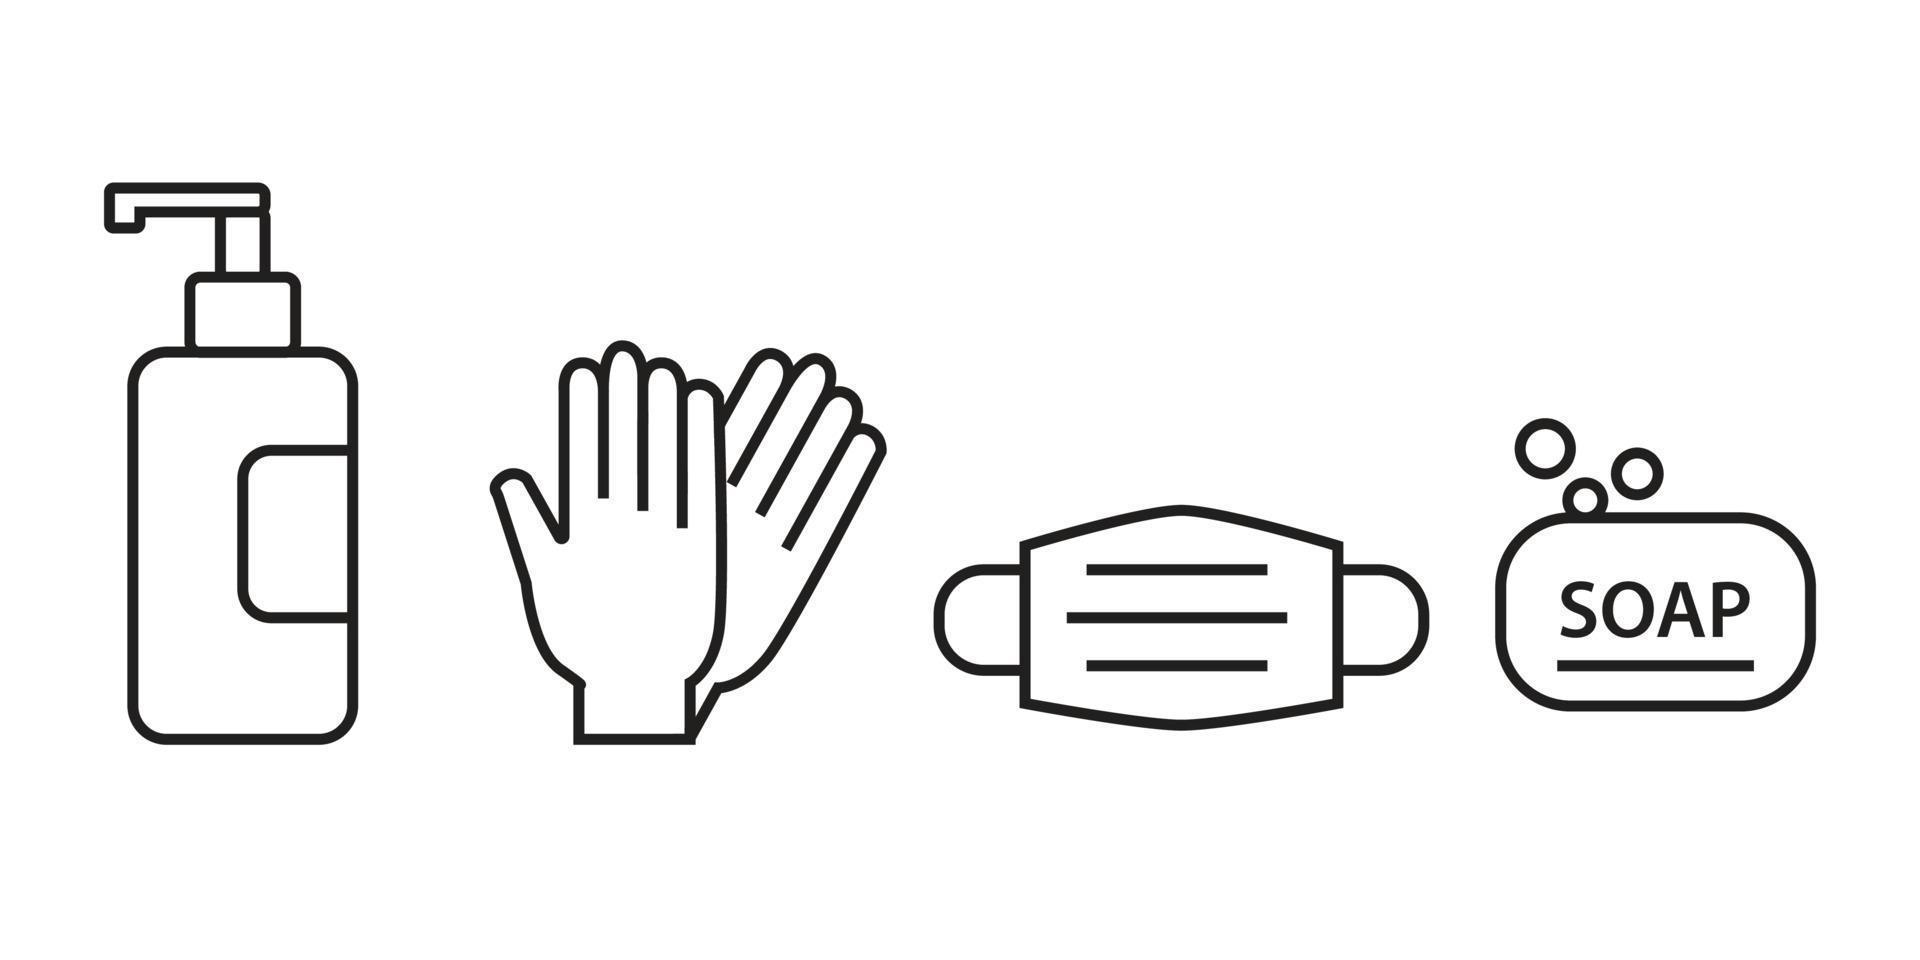 personlig skyddsutrustning ikoner - medicinsk mask, latex handskar, tvål. coronavirus, covid 19 förebyggande föremål. linje, kontur symboler. vektor illustration